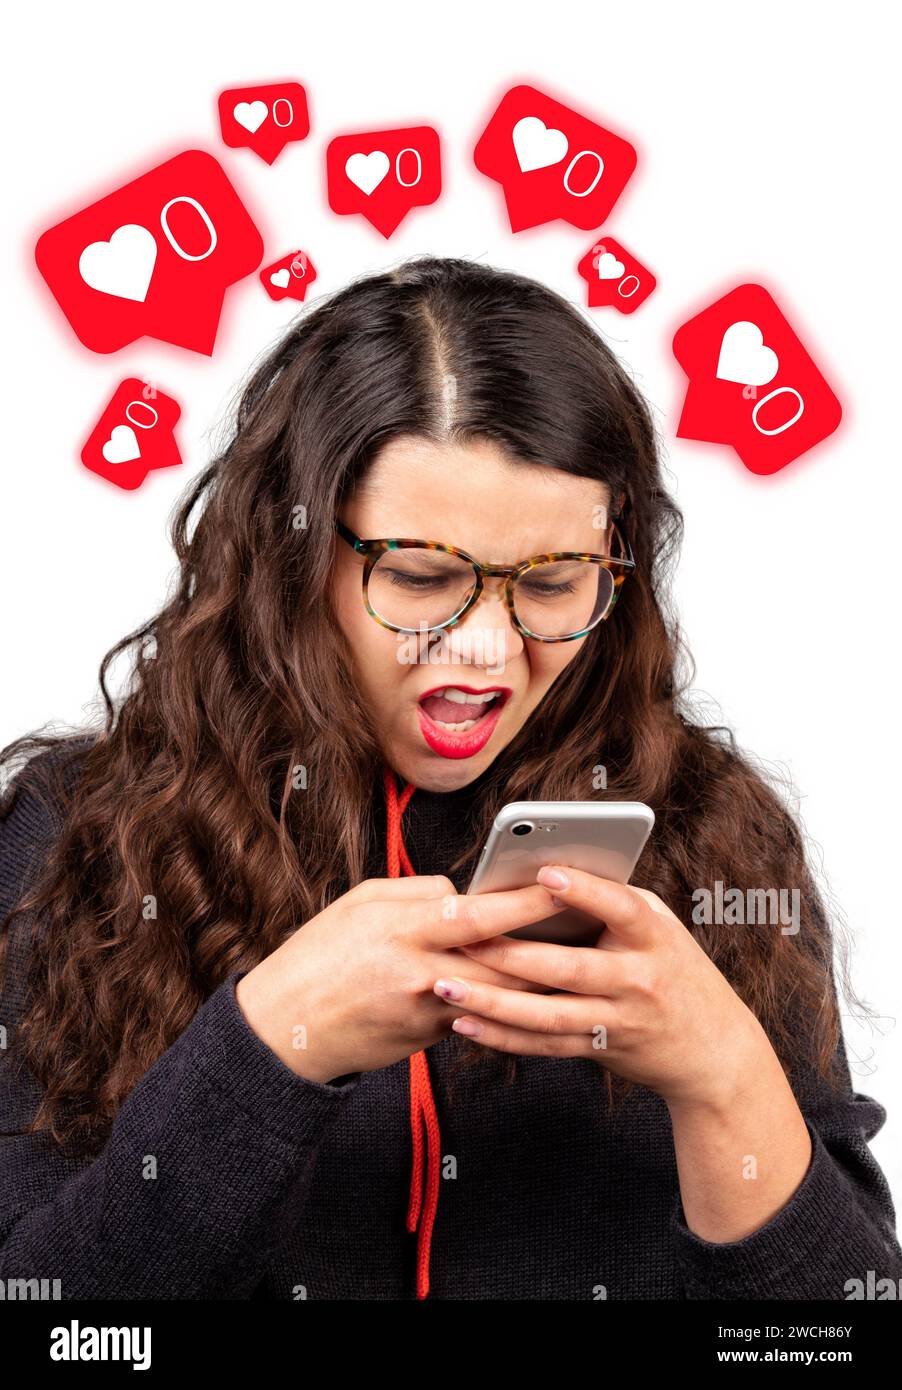 Concetto di inattività nei social network. La ragazza guarda con sorpresa il suo telefono su uno sfondo bianco. Dipendenza dai social media. Rosso brillante come icone. Foto Stock